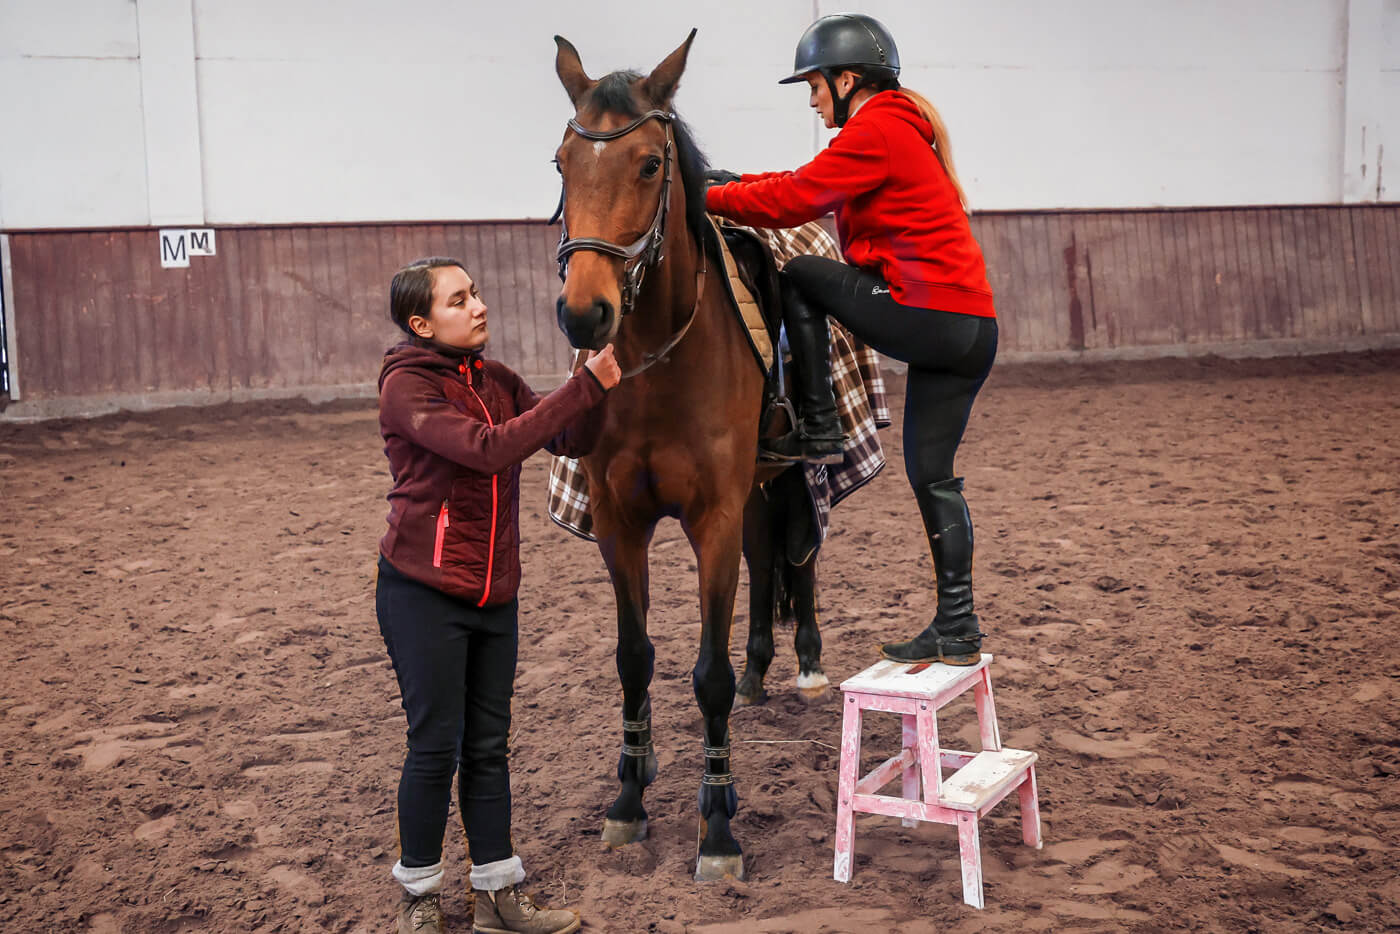 Eine zierliche Frau steigt von einer Trittleiter auf ein großes Reitpferd. Das Pferd wird von einem jungen Mädchen an der Trense festgehalten.